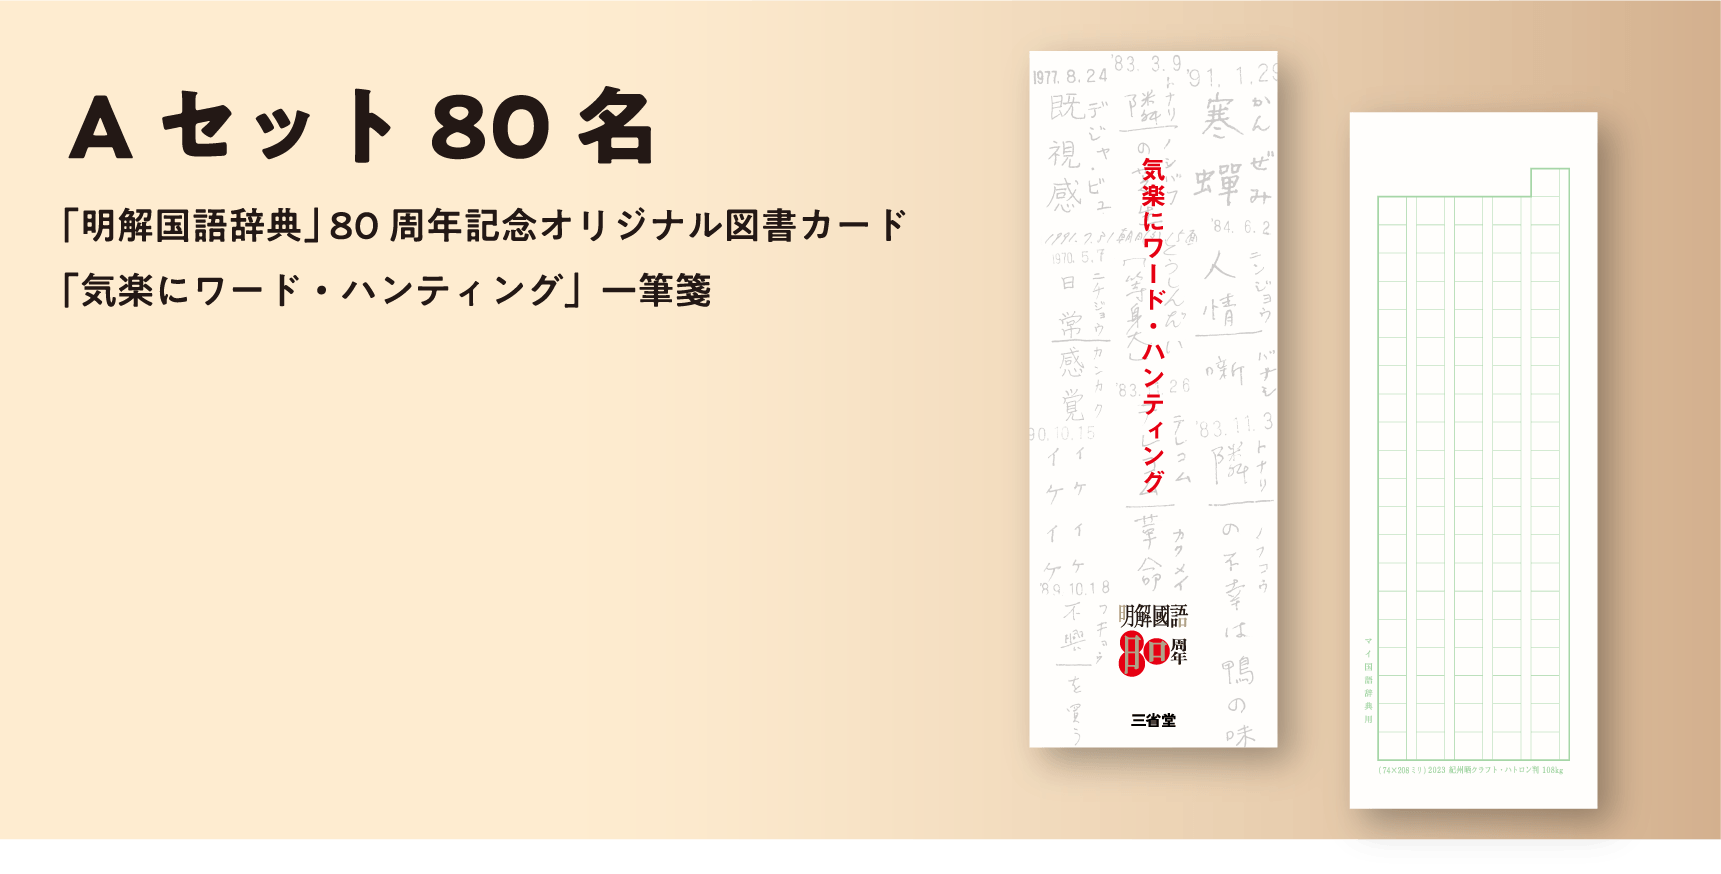 『明解国語辞典』80周年記念オリジナル図書カード＋「気楽にワード・ハンティング」一筆箋 

